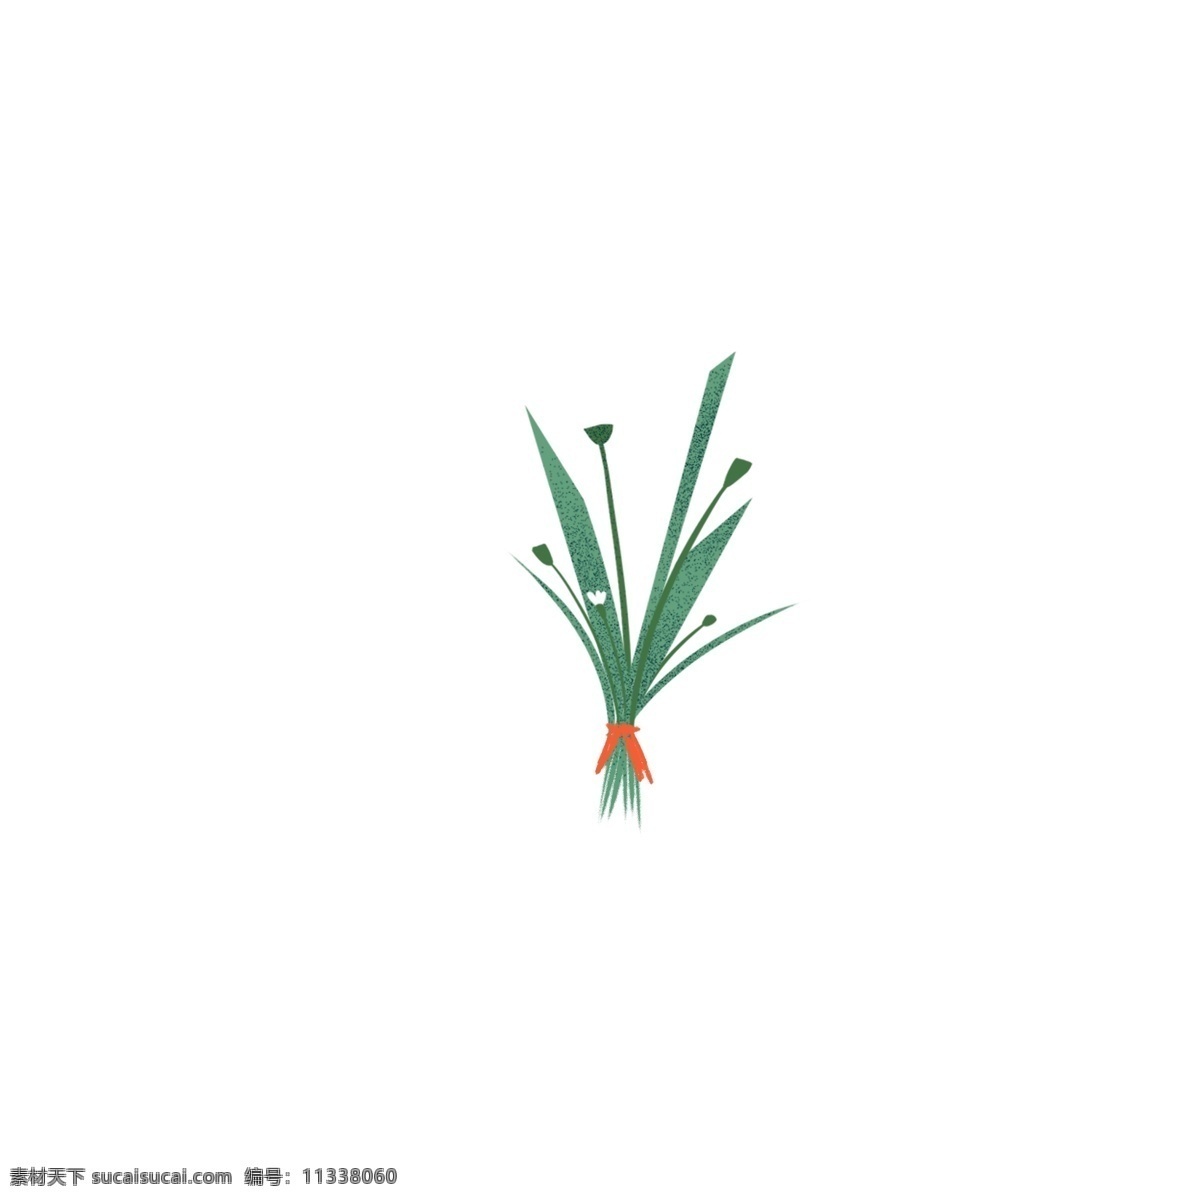 原创 彩绘 绿植 鲜花 元素 小花 植物 创意 设计元素 插画